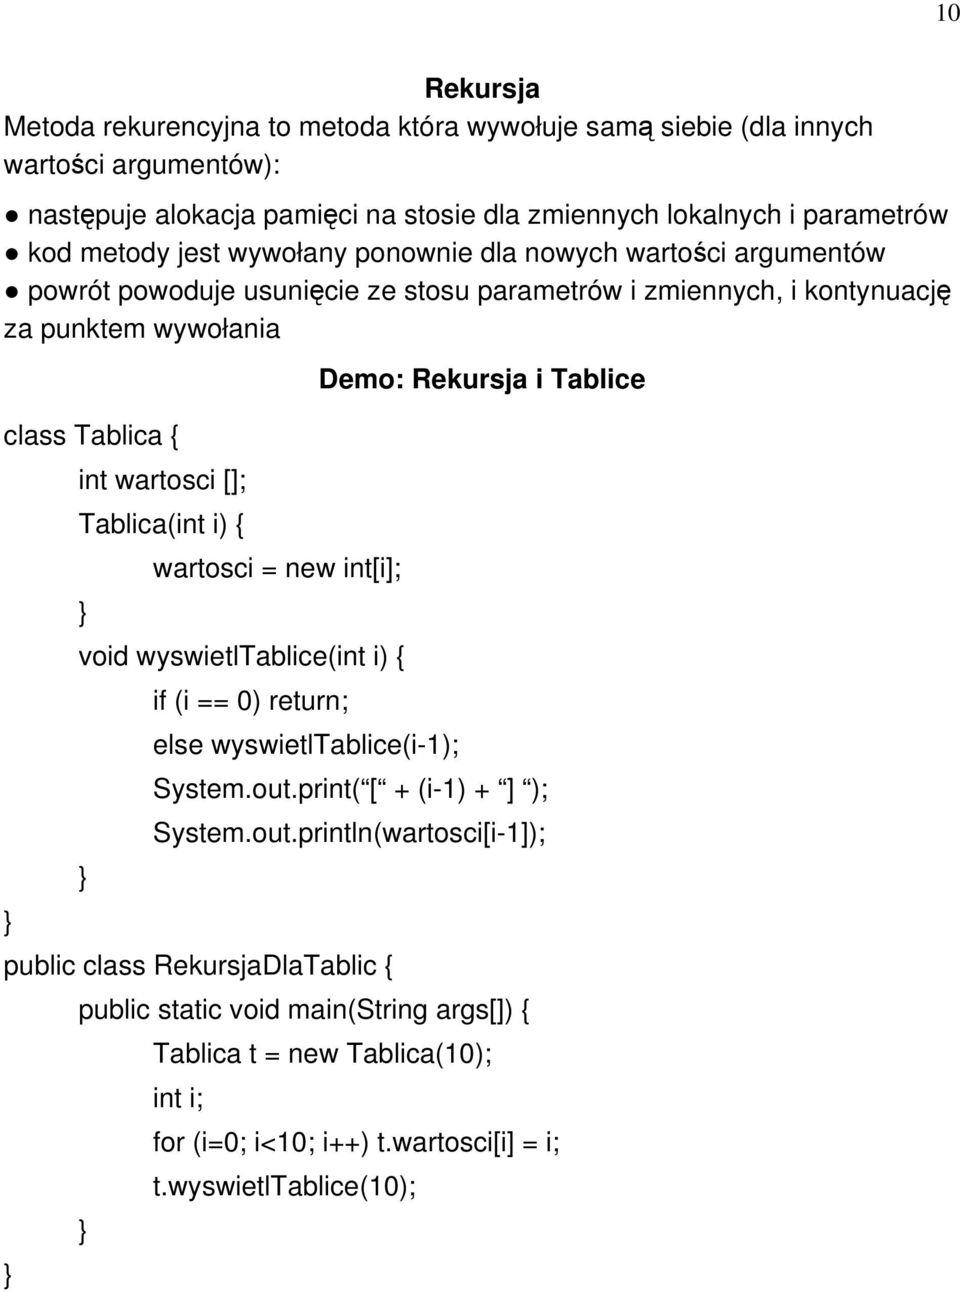 int wartosci []; Tablica(int i) { wartosci = new int[i]; void wyswietltablice(int i) { if (i == 0) return; else wyswietltablice(i-1); Demo: Rekursja i Tablice System.out.